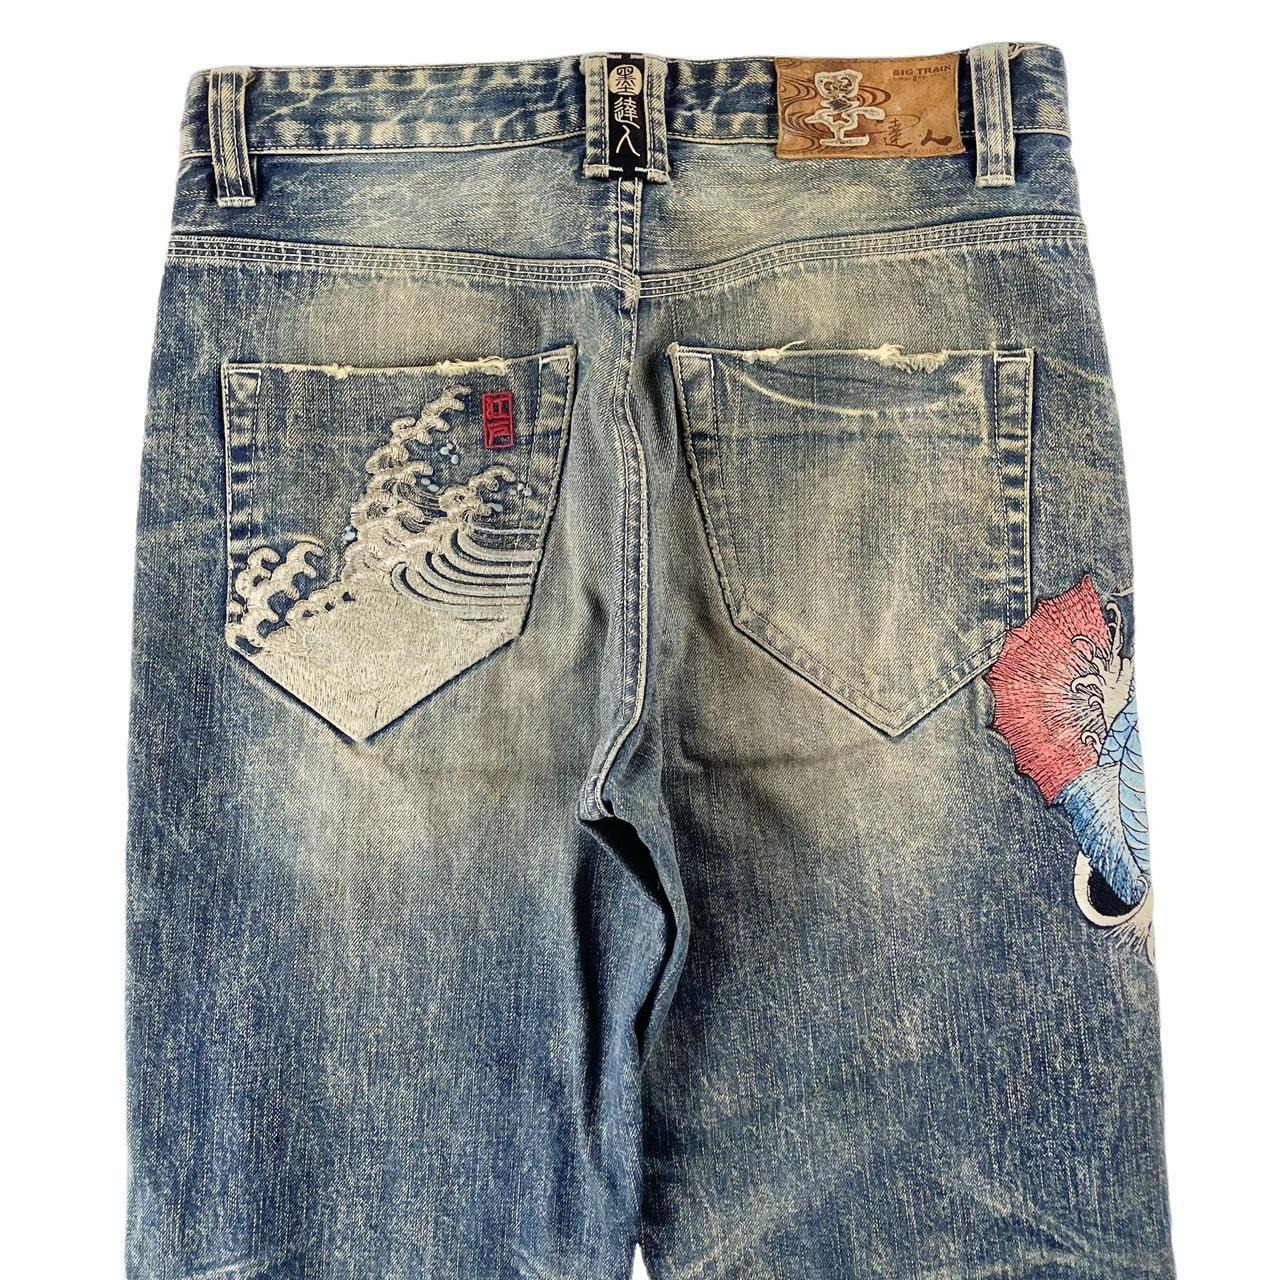 Vintage Big train koi fish Japanese denim jeans... - Depop